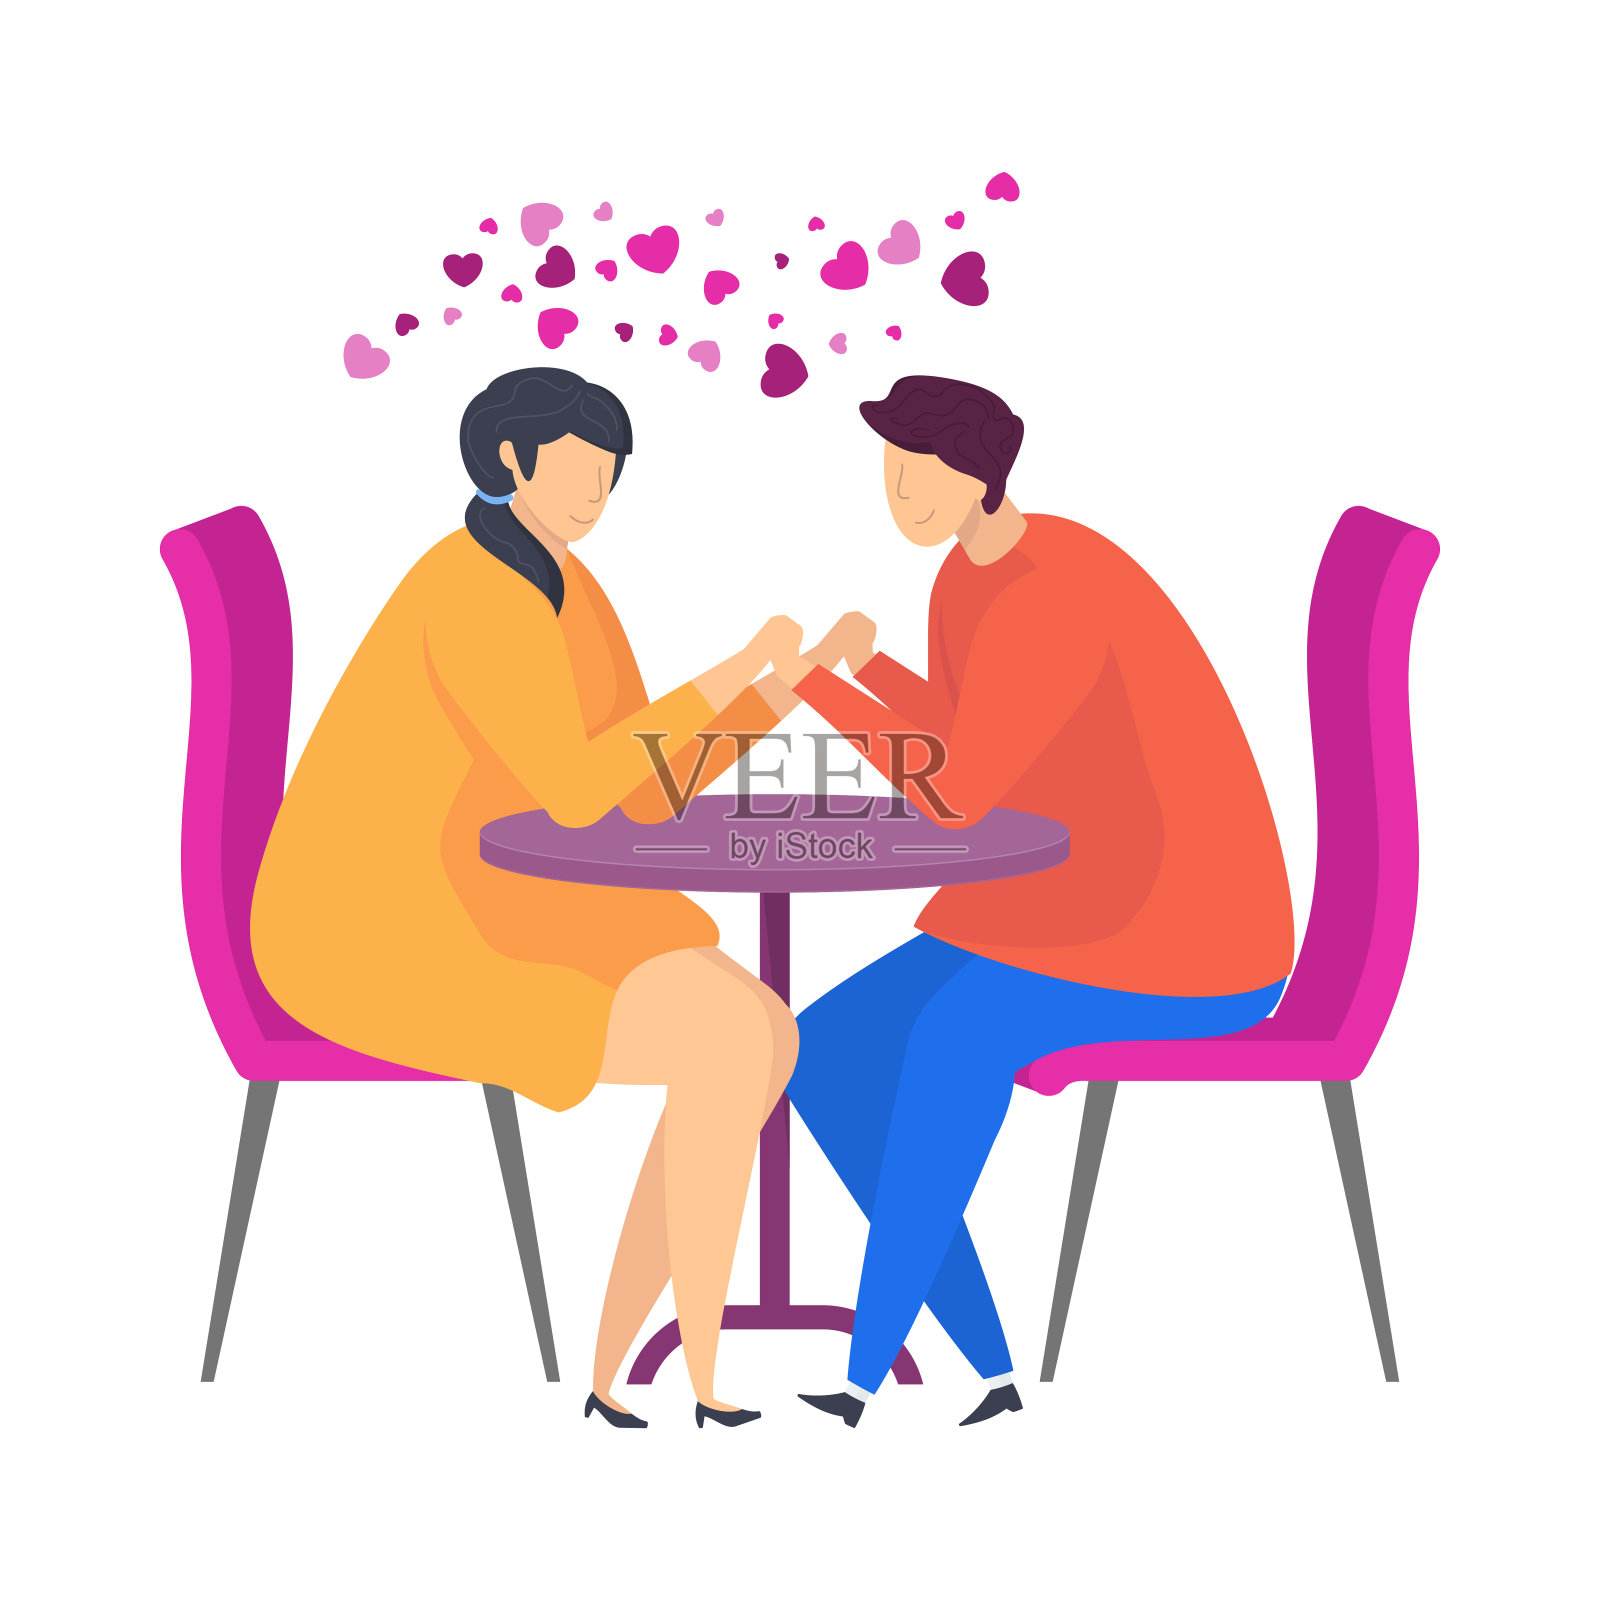 在咖啡馆约会，温柔的话语，一份爱的宣言。情人节的文字。插画图片素材